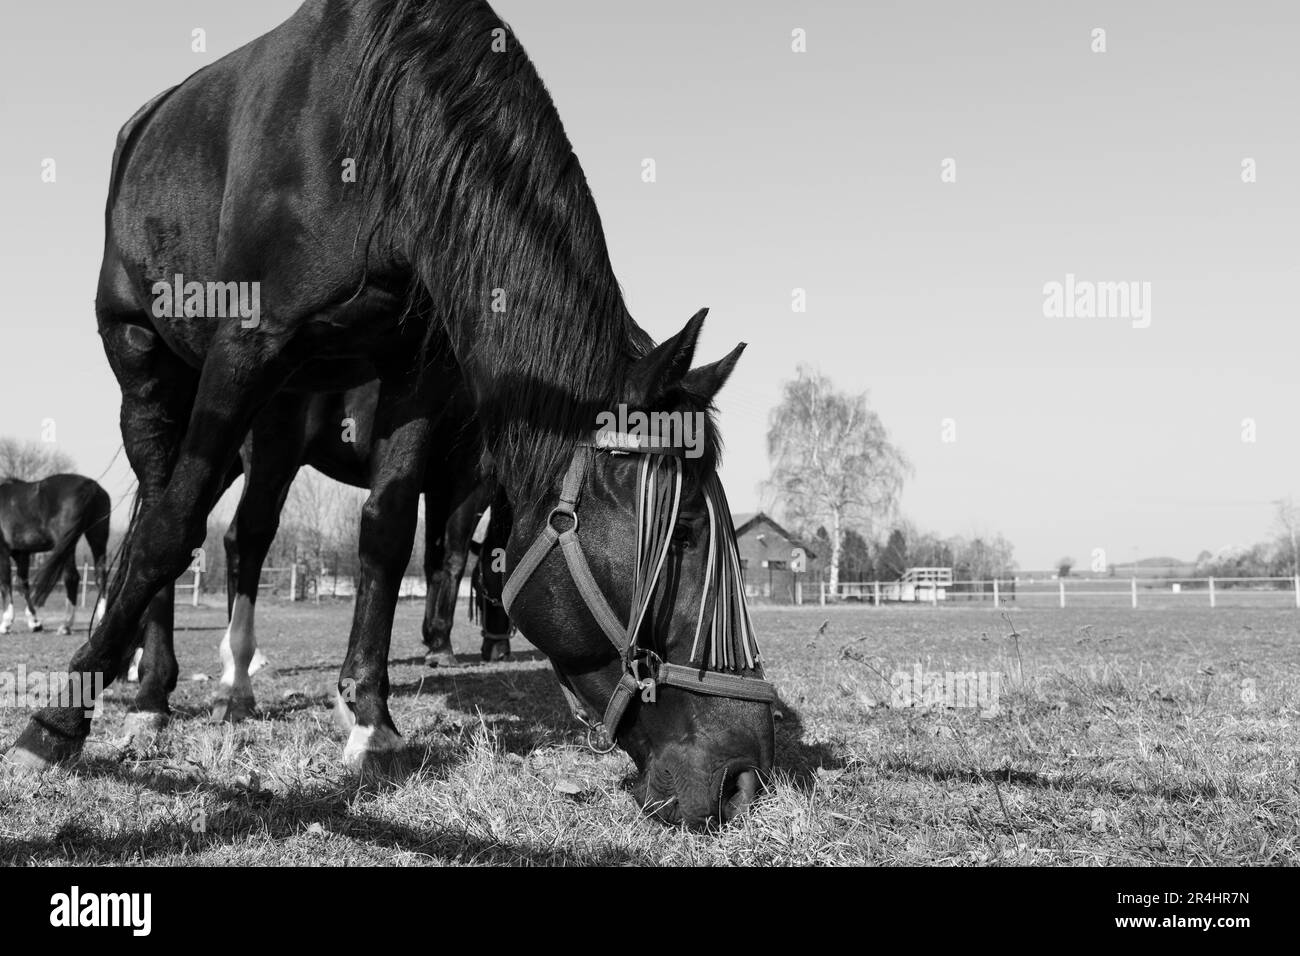 Cavallo con protezione da mosca sul viso mentre pascolava nel prato in una giornata di sole in bianco e nero Foto Stock